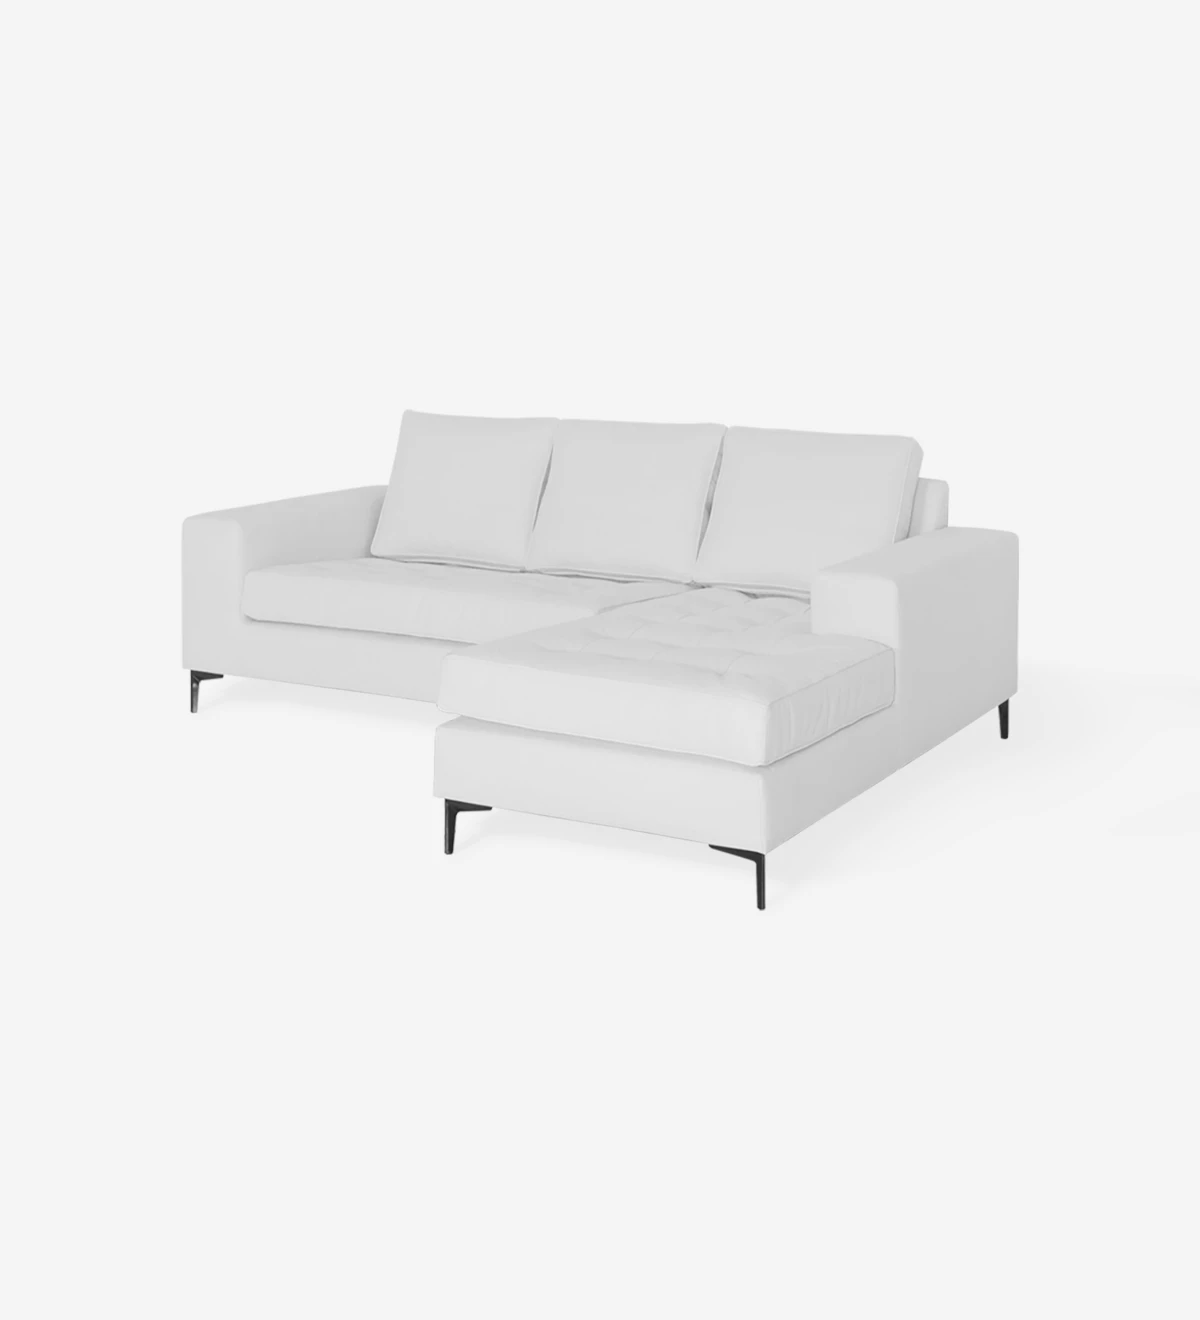 Canapé 2 places avec chaise longue, rembourré en simili cuir blanc, avec pieds en métal laqué noir.